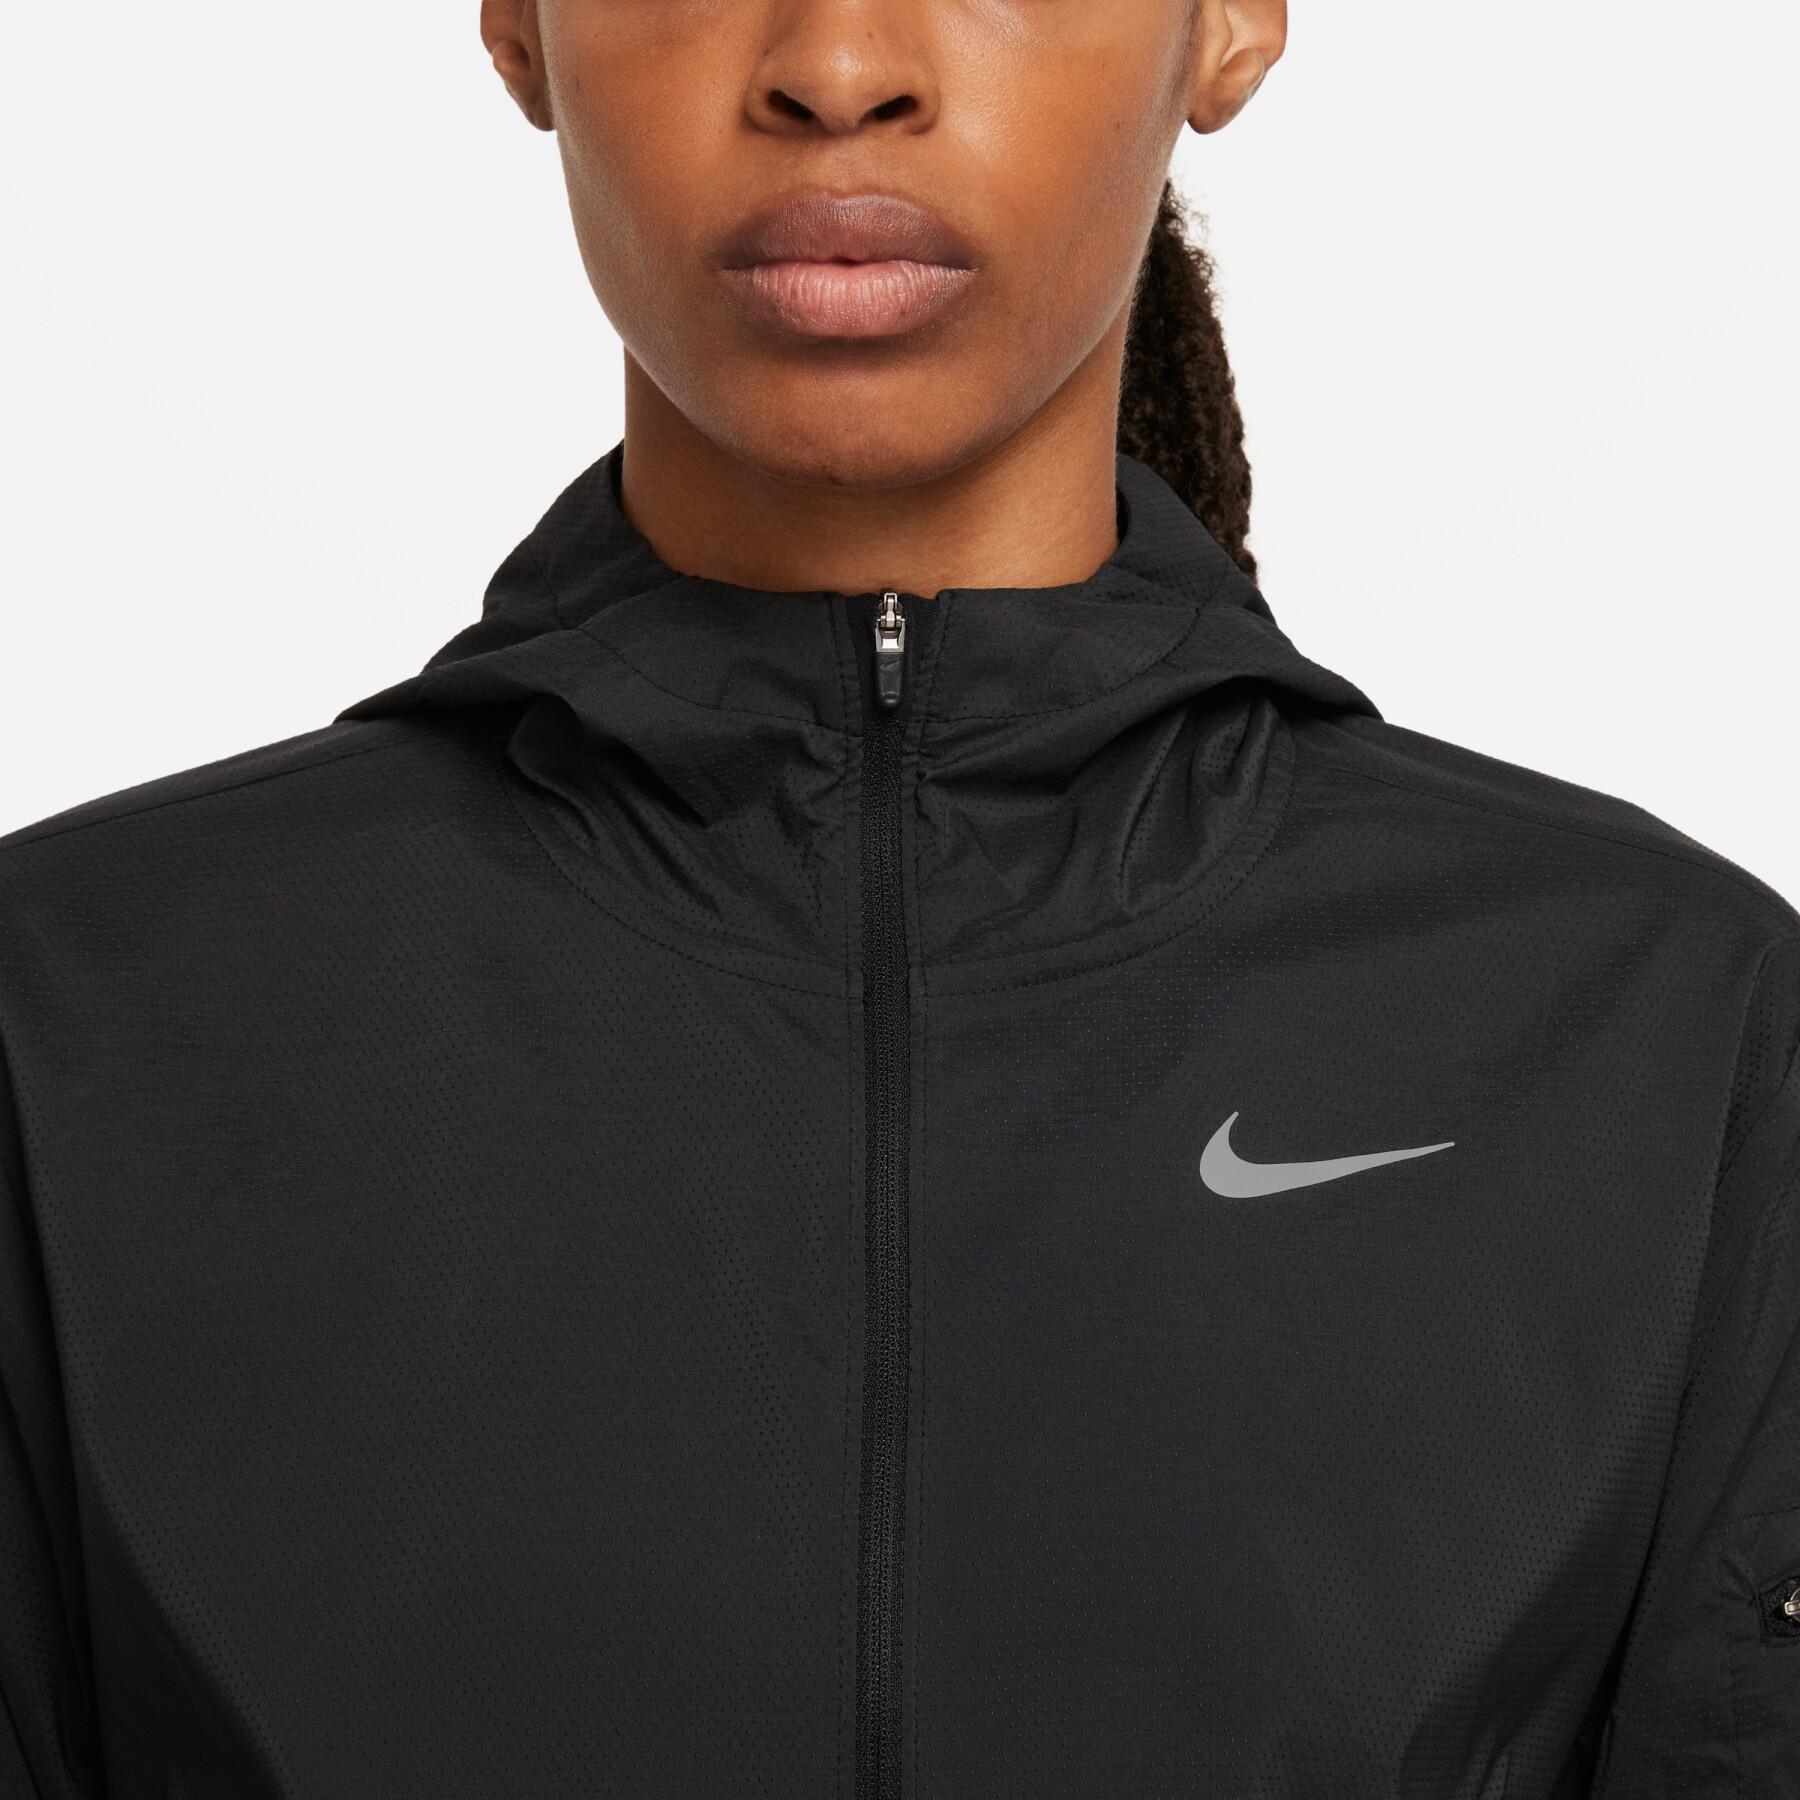 Women's sweat jacket Nike Impossibly Light 